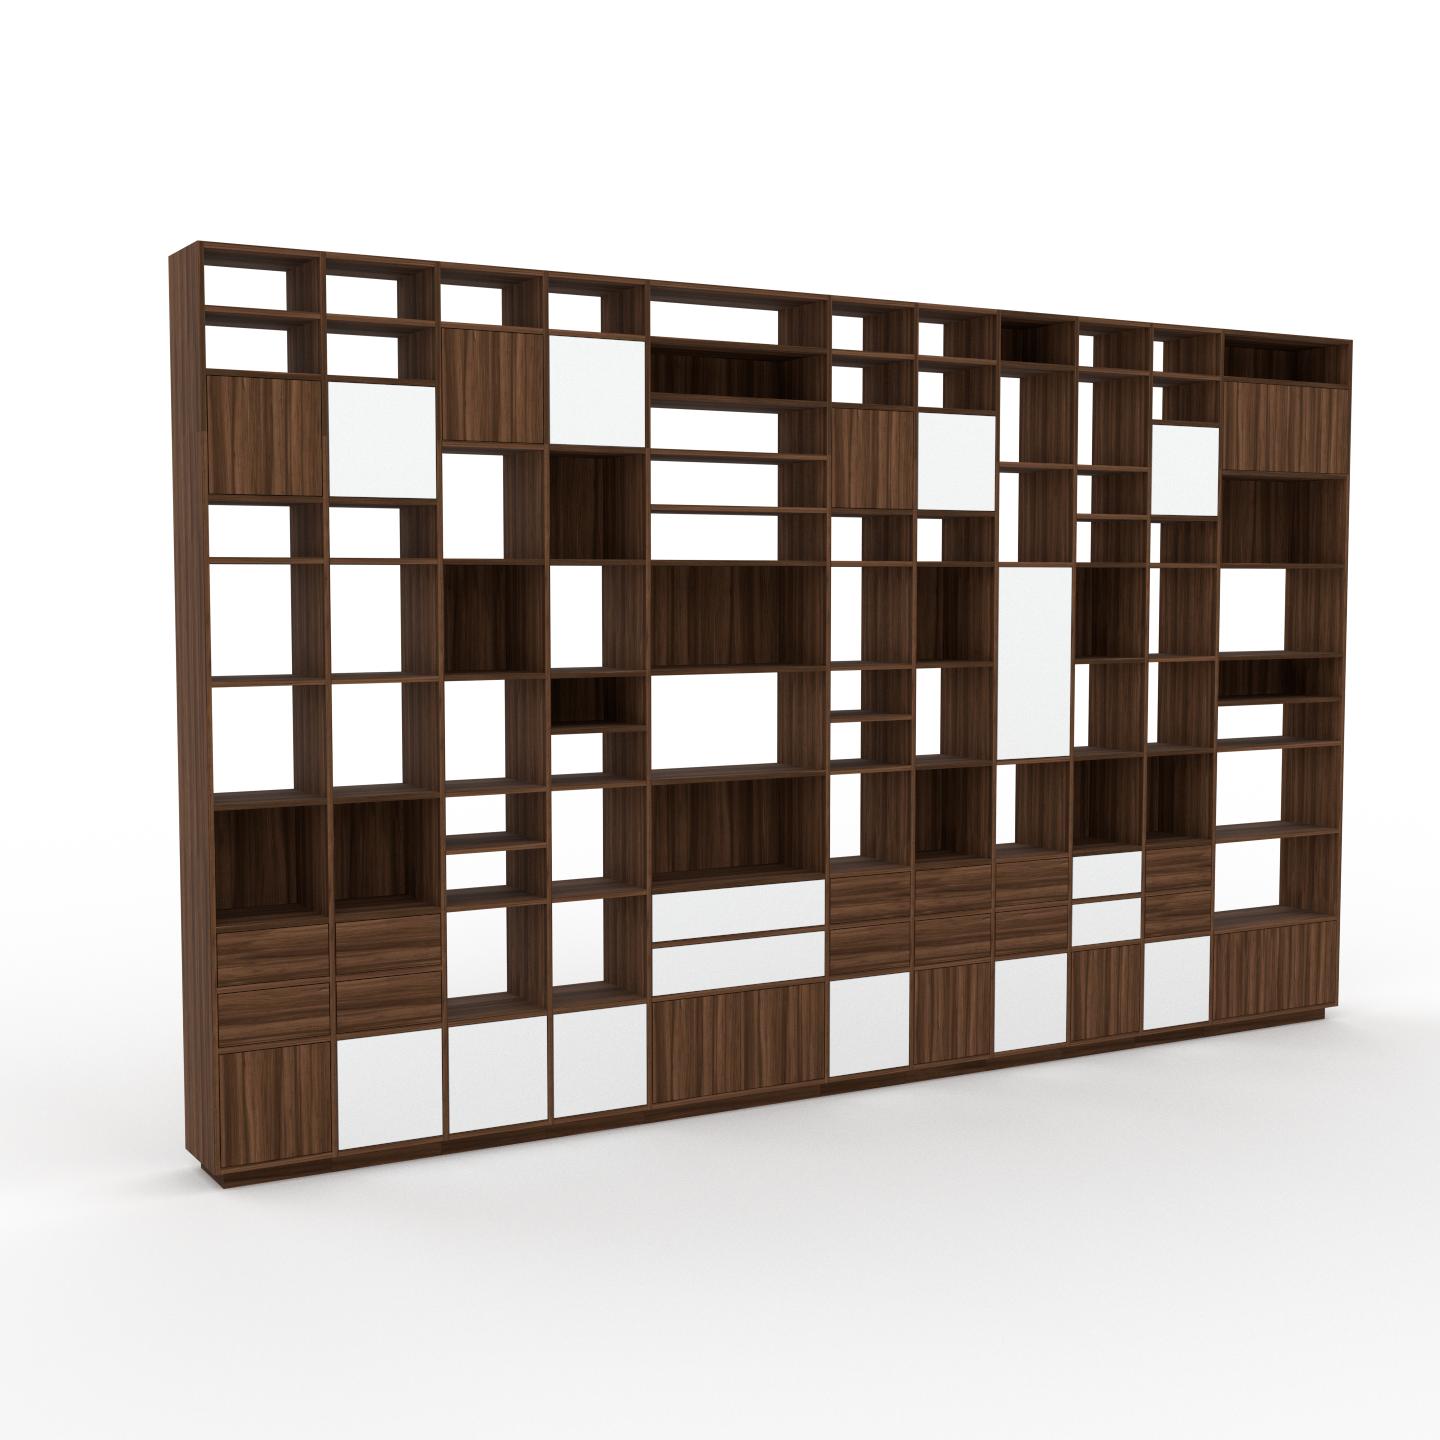 MYCS Wohnwand Nussbaum - Individuelle Designer-Regalwand: Schubladen in Nussbaum & Türen in Nussbaum - Hochwertige Materialien - 498 x 296 x 35 cm,...